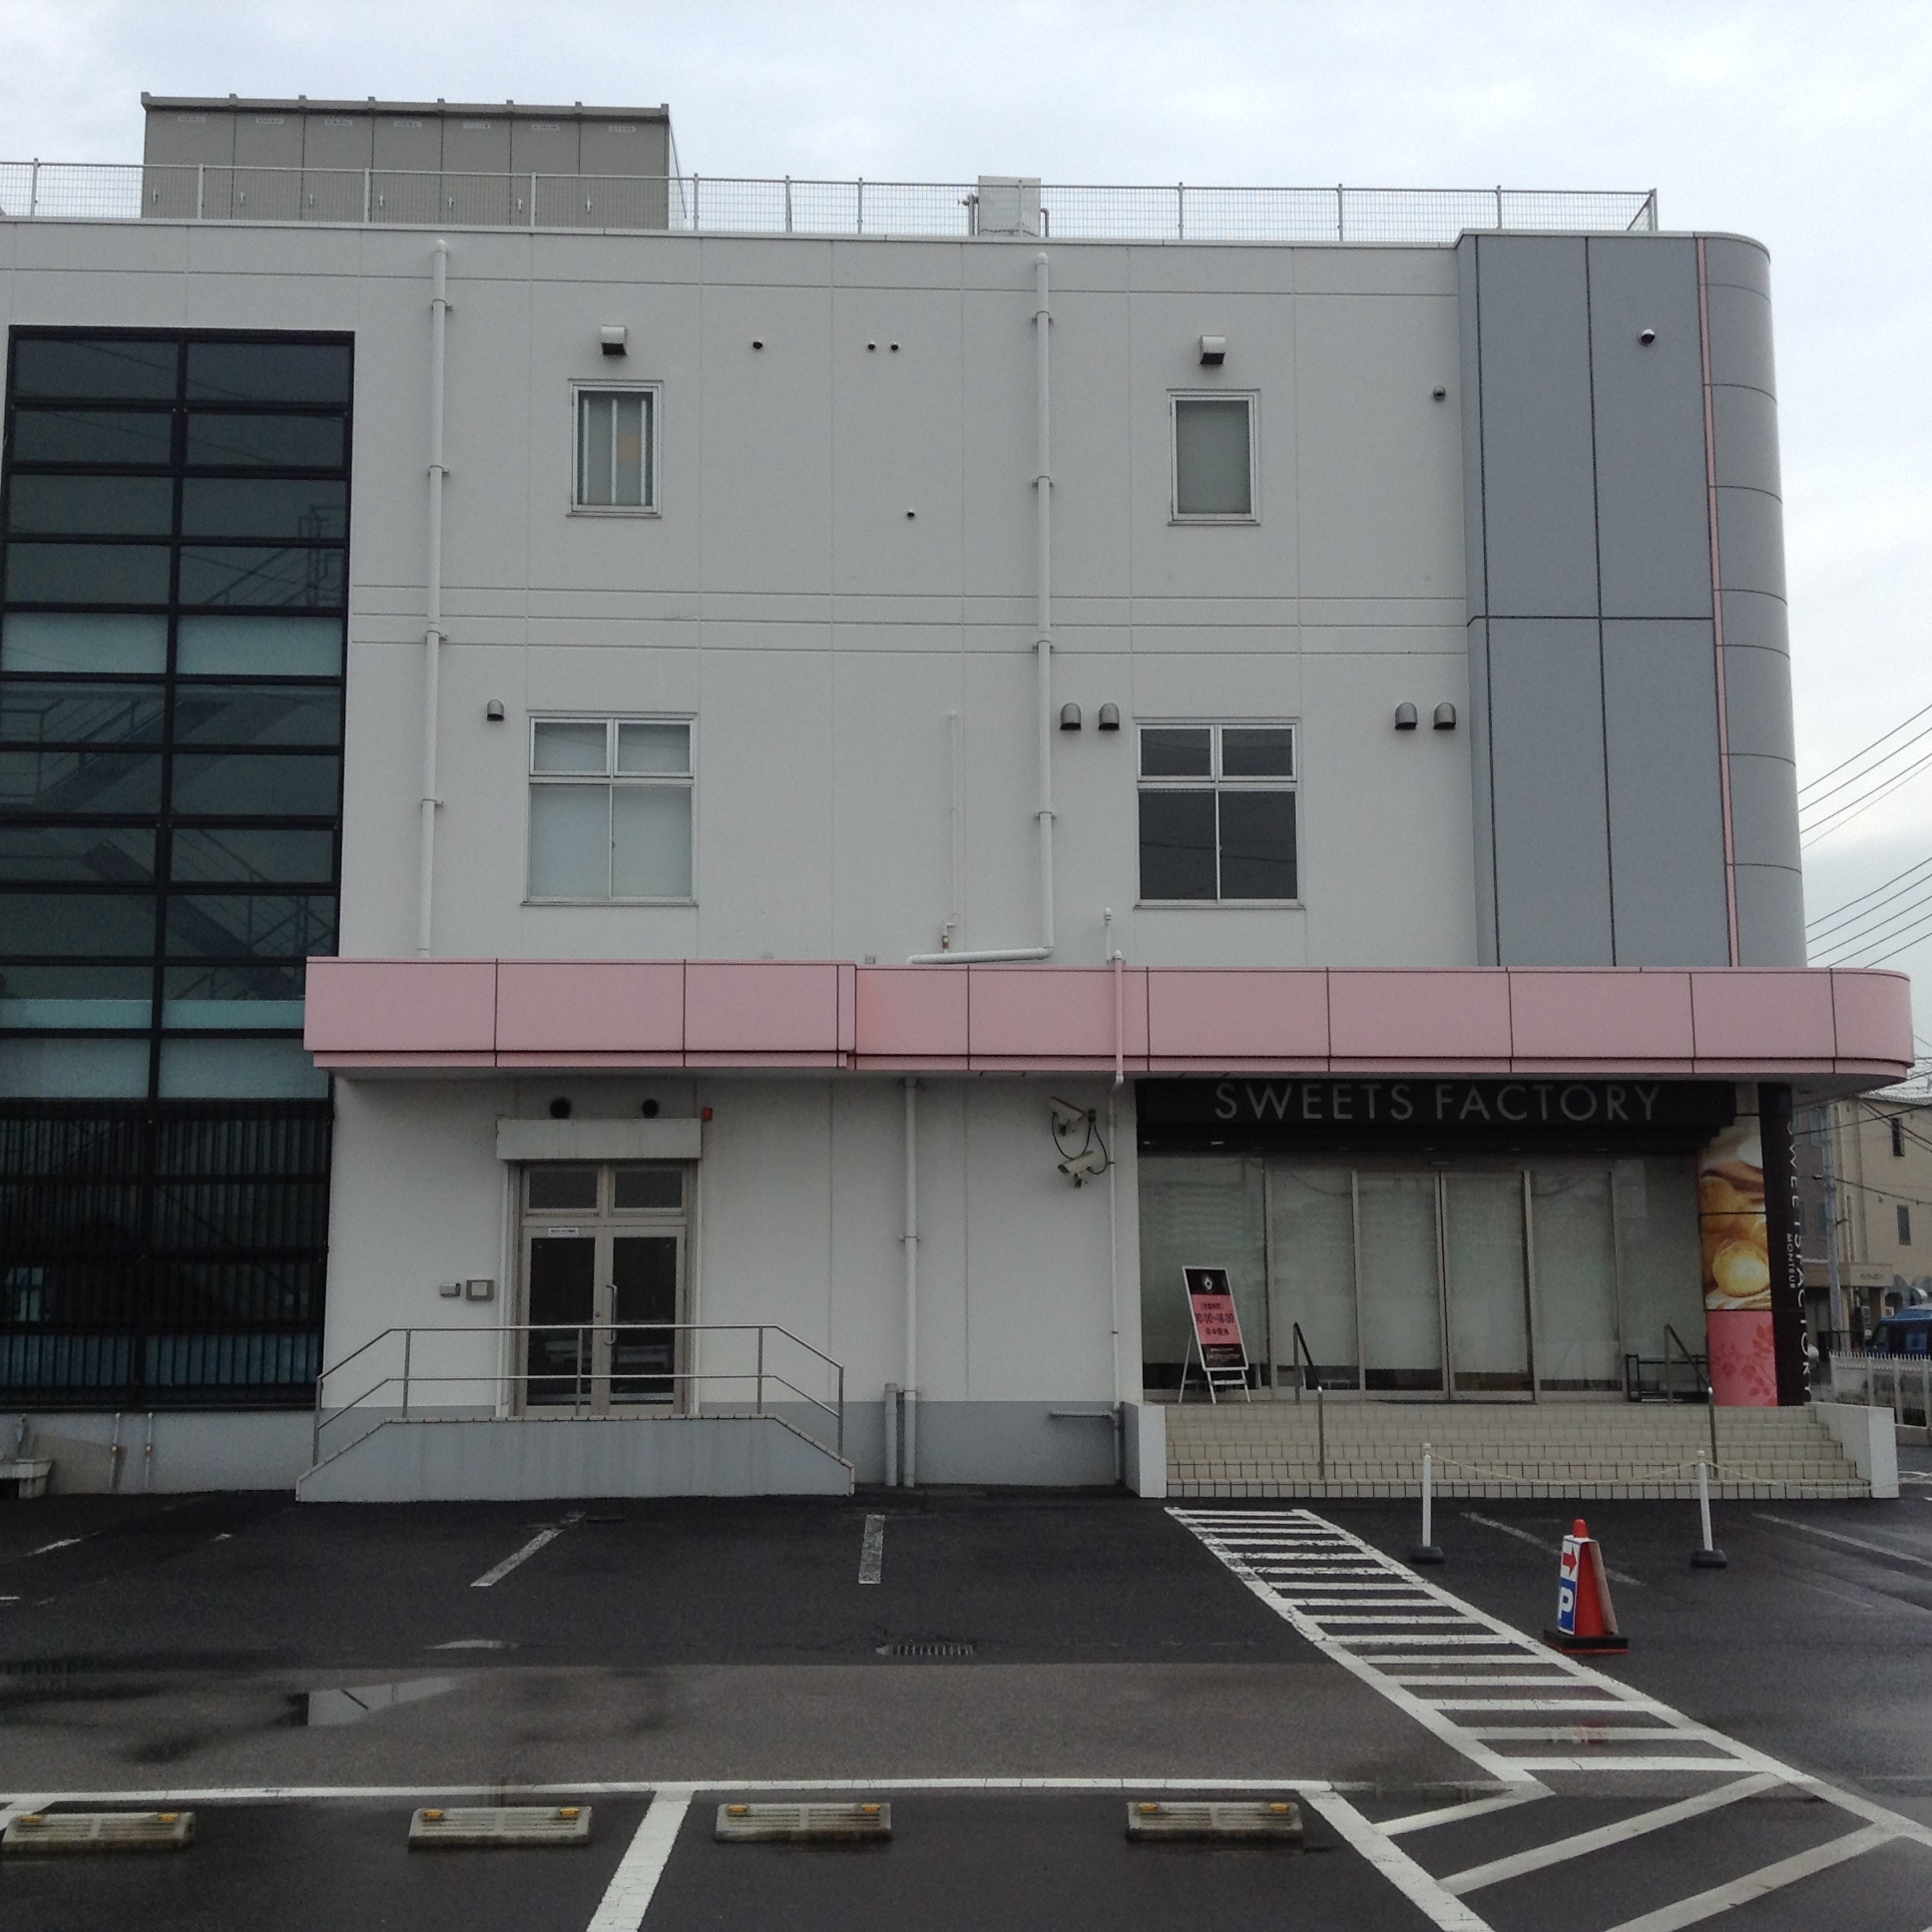 埼玉県八潮市にあるモンテール八潮工場の直売店に行って来ました 三世代旅行大好きババがオススメする家族旅行